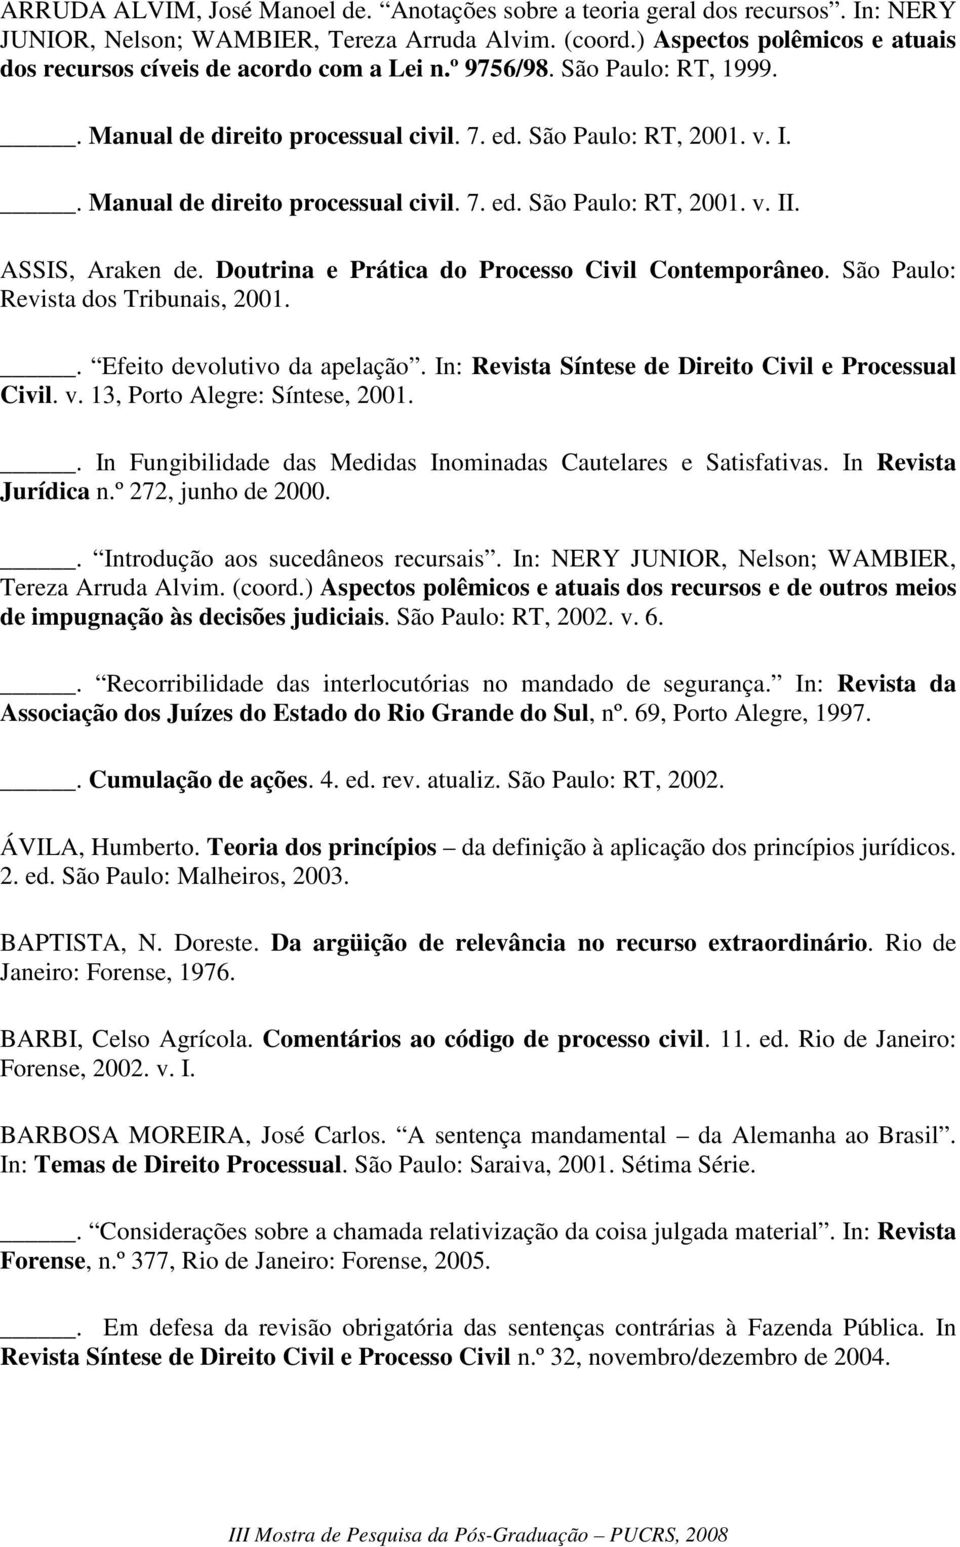 . Manual de direito processual civil. 7. ed. São Paulo: RT, 2001. v. II. ASSIS, Araken de. Doutrina e Prática do Processo Civil Contemporâneo. São Paulo: Revista dos Tribunais, 2001.